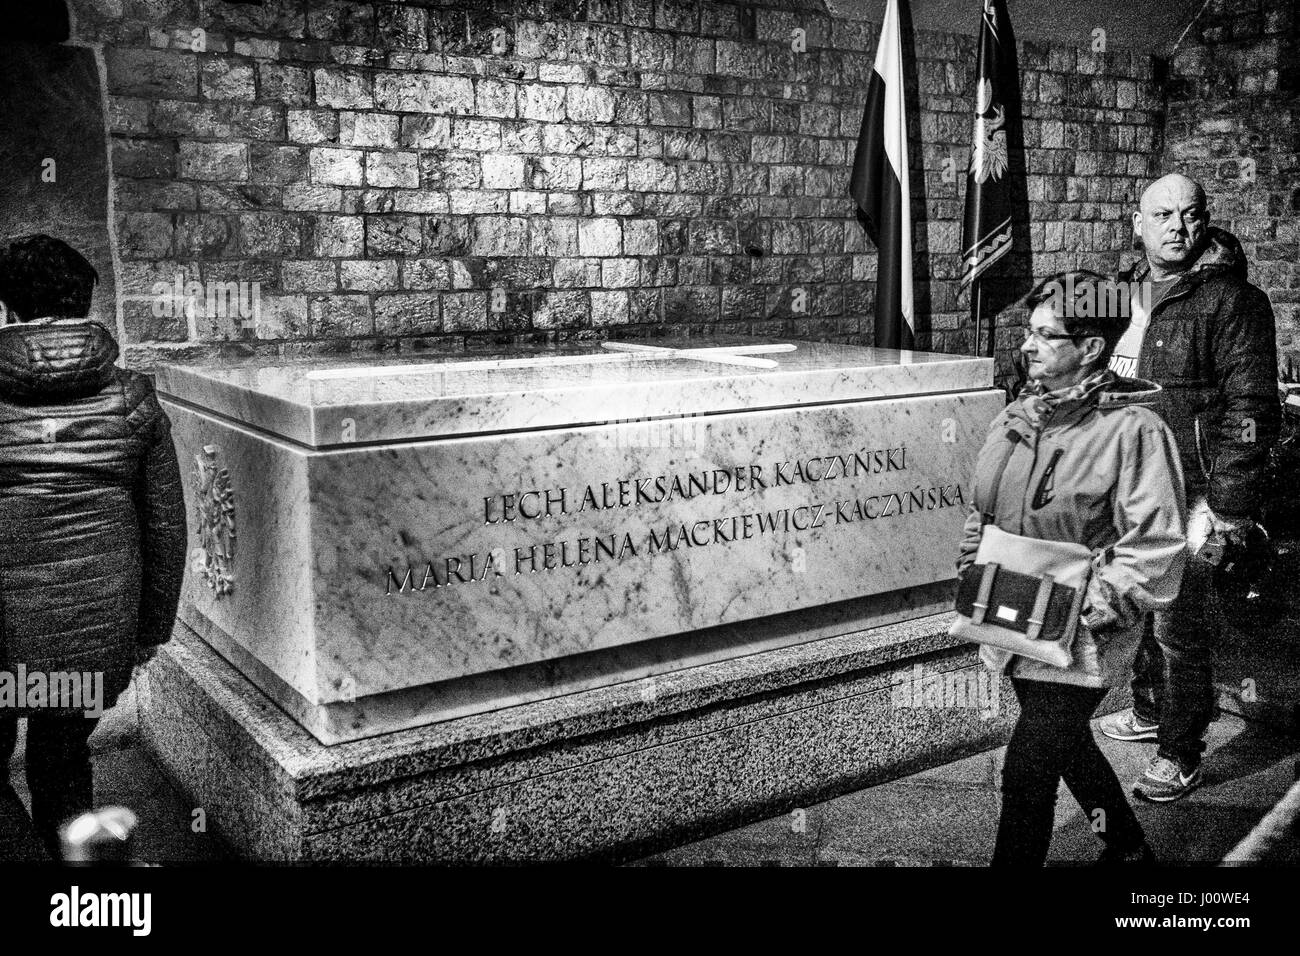 Cracovie, Pologne. 8Th apr 2017. Pouce, sarcophage, de Lech Kaczynski, Président polonais dans l'antichambre de la crypte sous la Tour des Cloches d'argent sous la cathédrale de Wawel à Cracovie, Pologne le 08.04.2017 Kaczynski meurt dans l'écrasement d'un avion à réaction de l'Armée de l'Air polonaise qui s'est produite sur une tentative d'atterrissage à l'aéroport de Smolensk-North en Russie le 11 avril 2010. Par Wiktor Dabkowski Wiktor Dabkowski/crédit : ZUMA Wire/Alamy Live News Banque D'Images